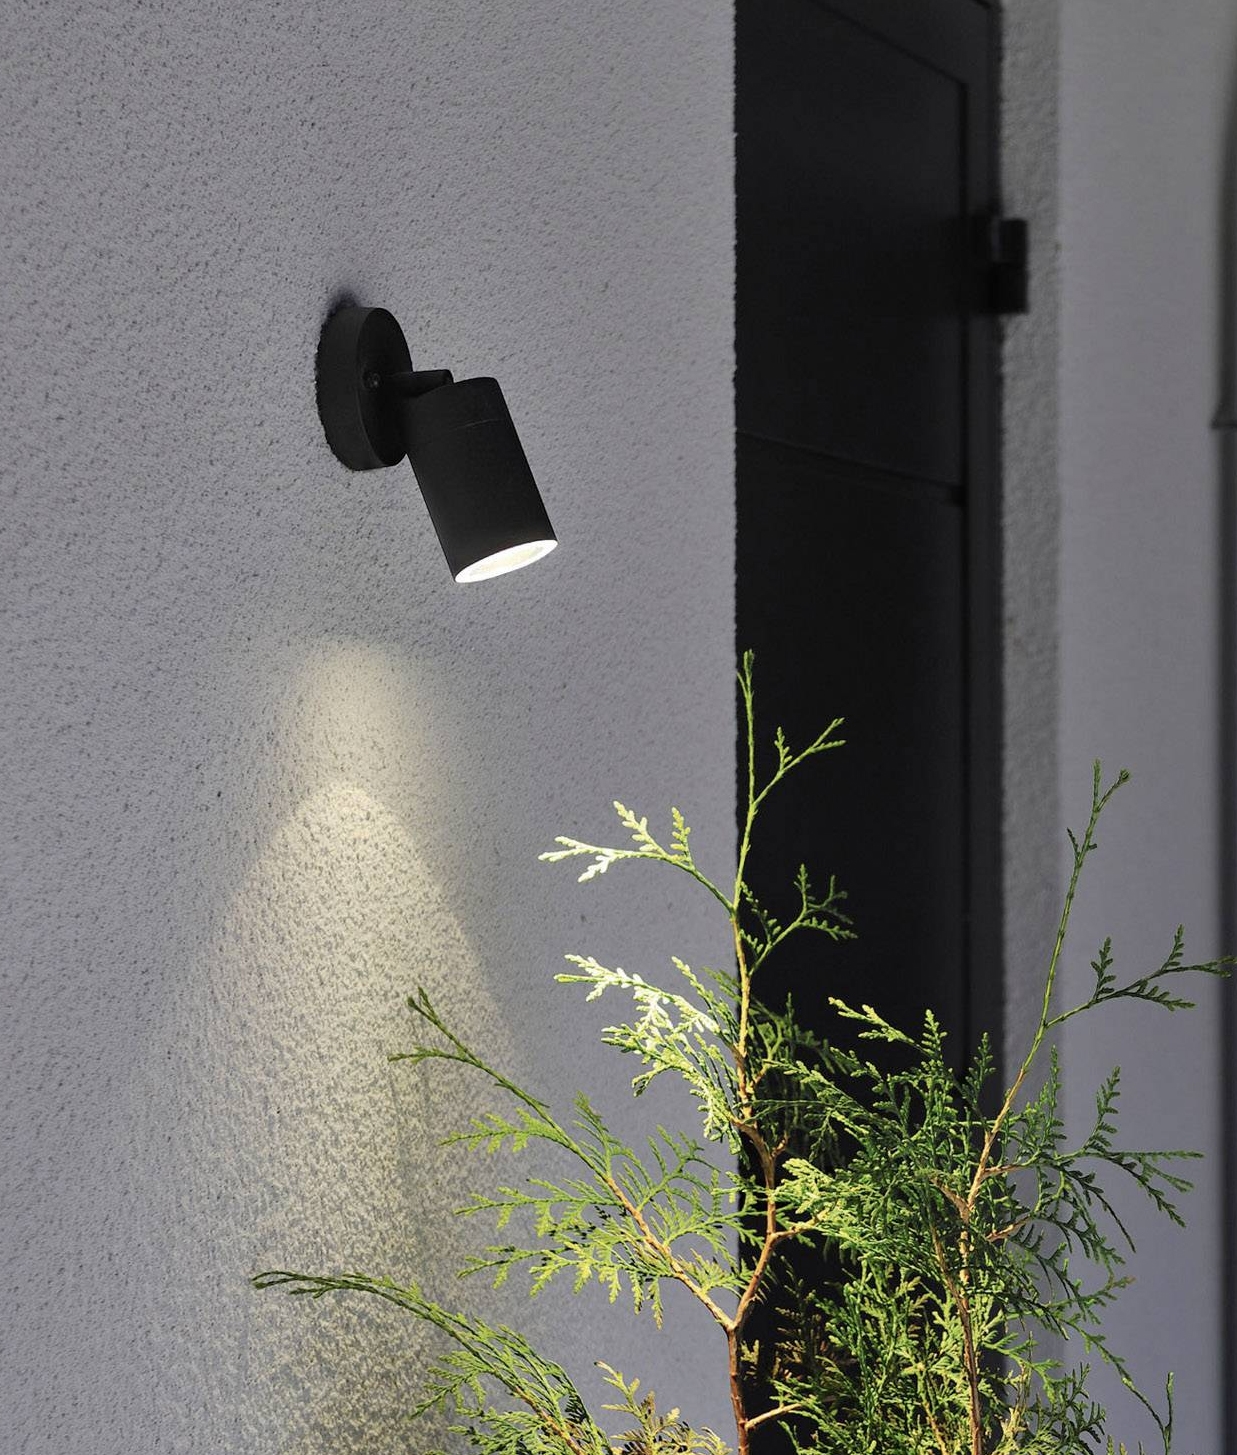 Adjustable Spotlight For Gu10 Mains, External Wall Mounted Spotlights